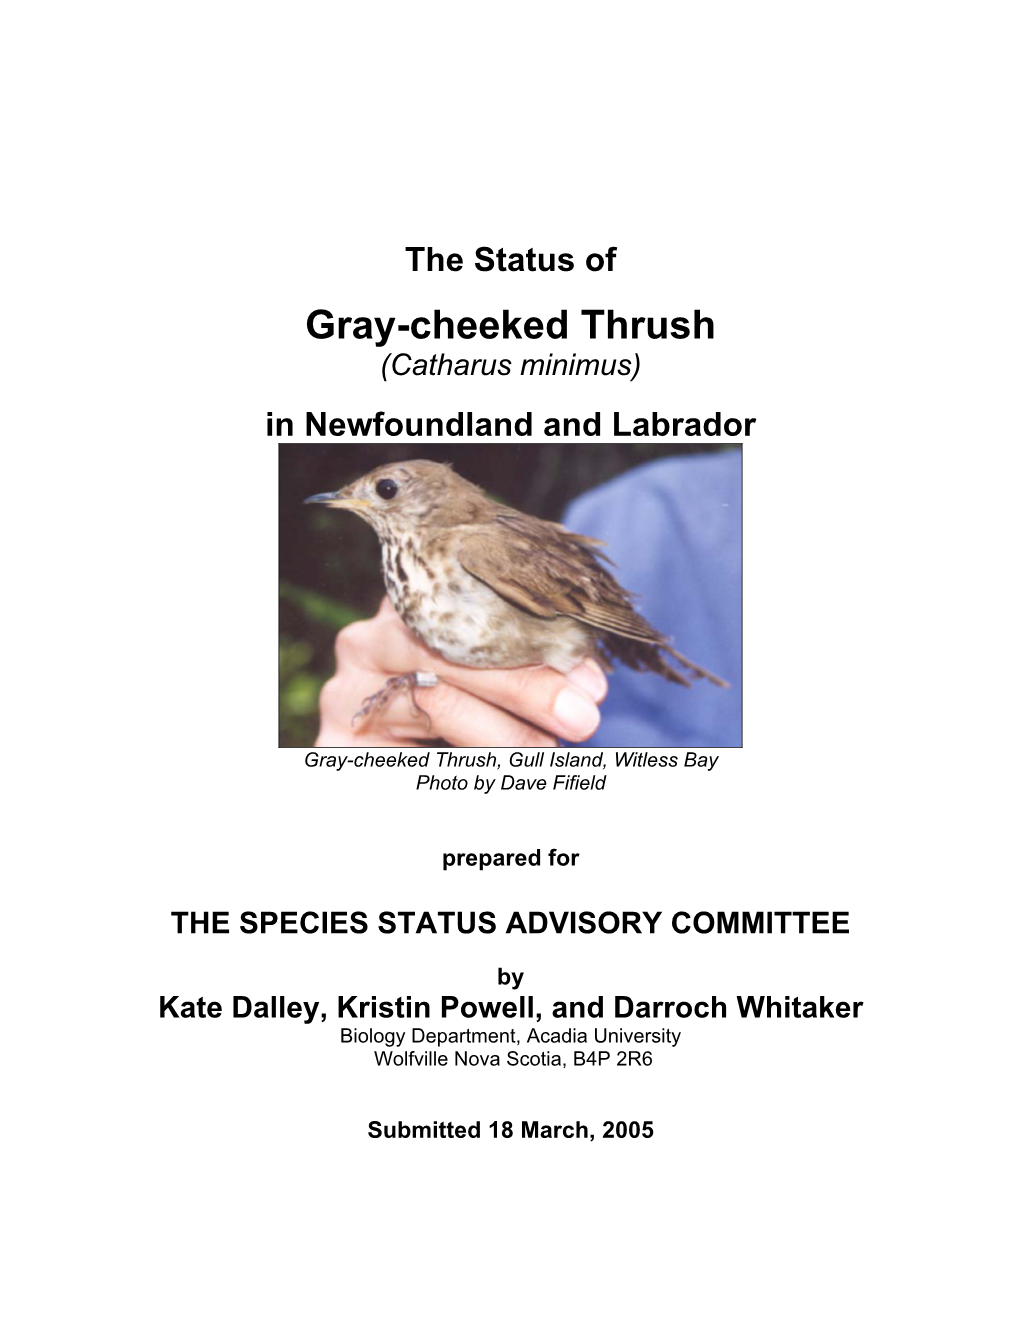 Gray-Cheeked Thrush (Catharus Minimus)